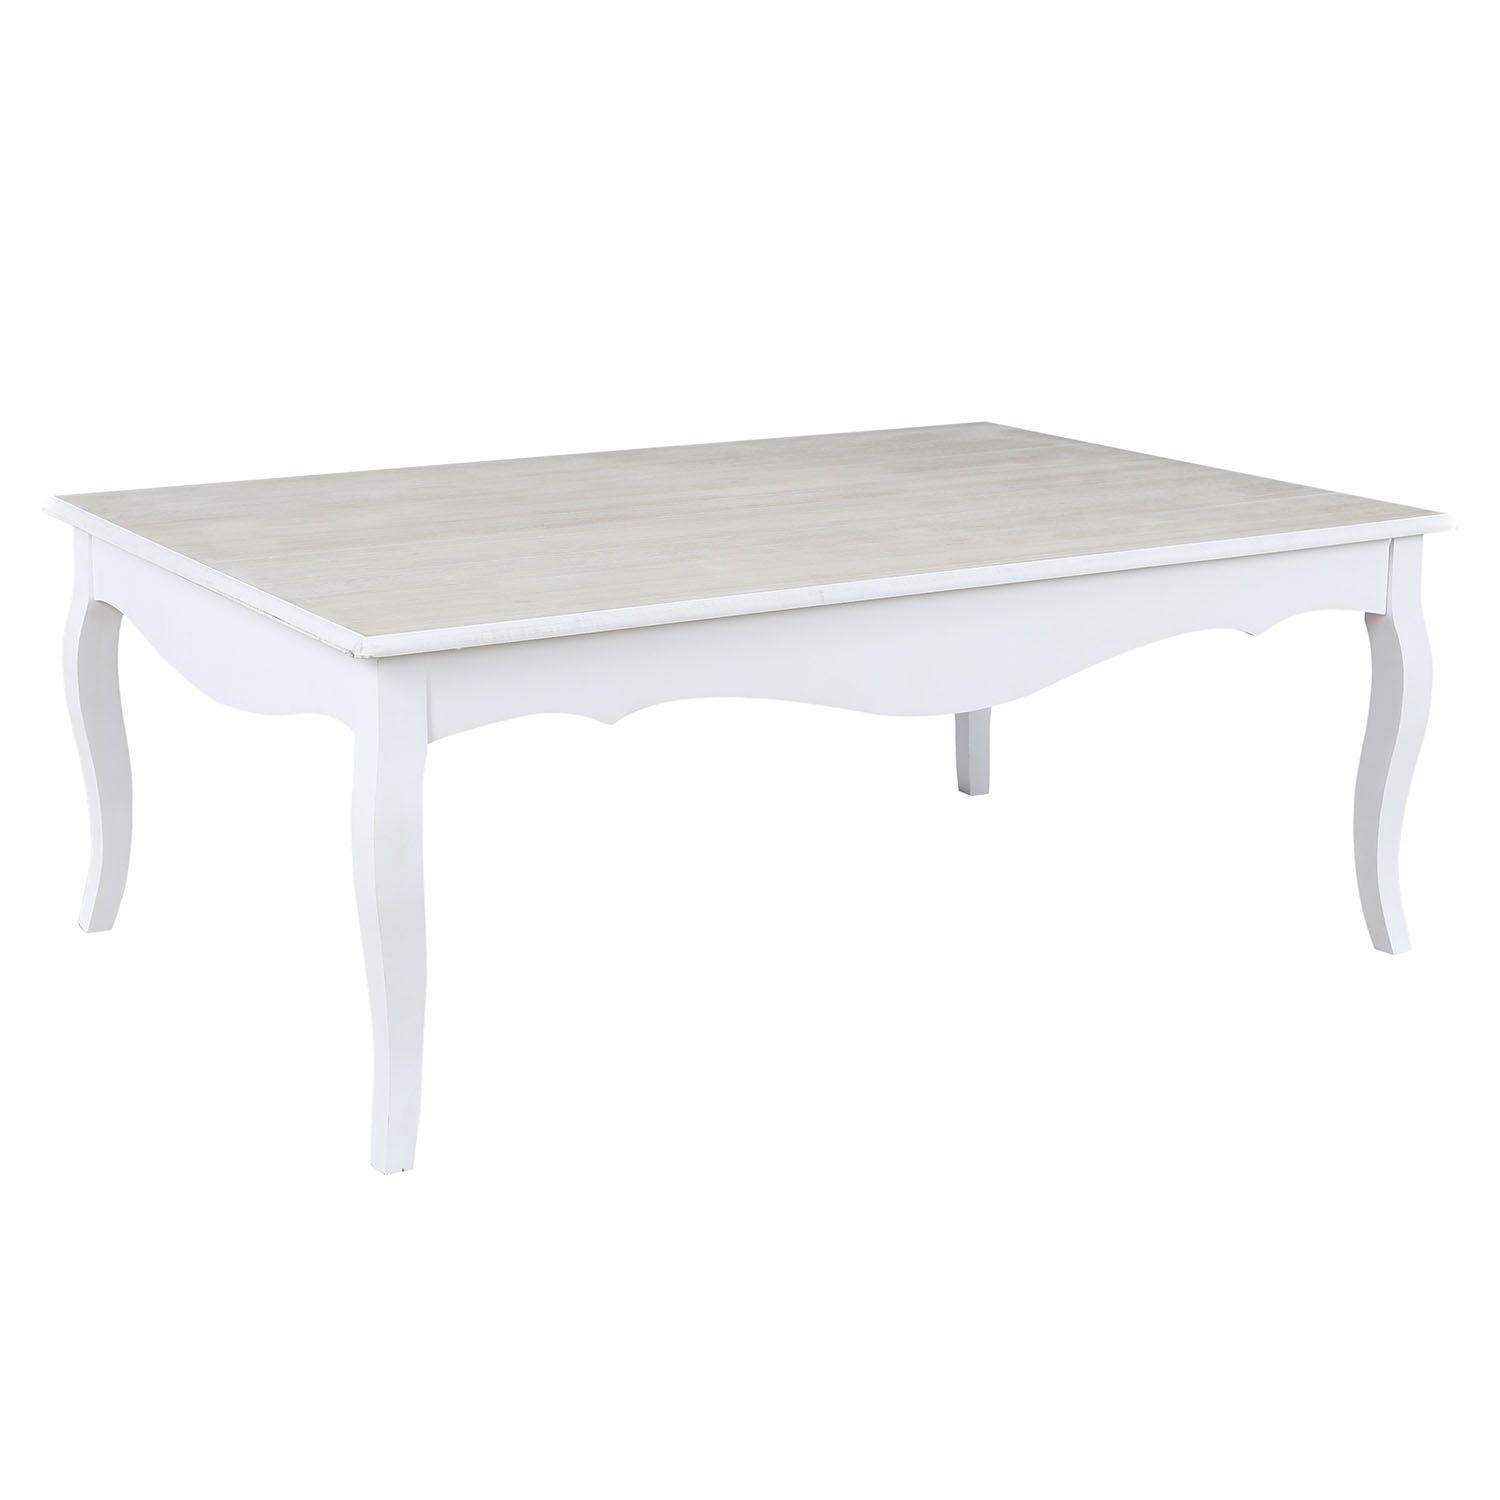 table basse en bois design romantique blanc